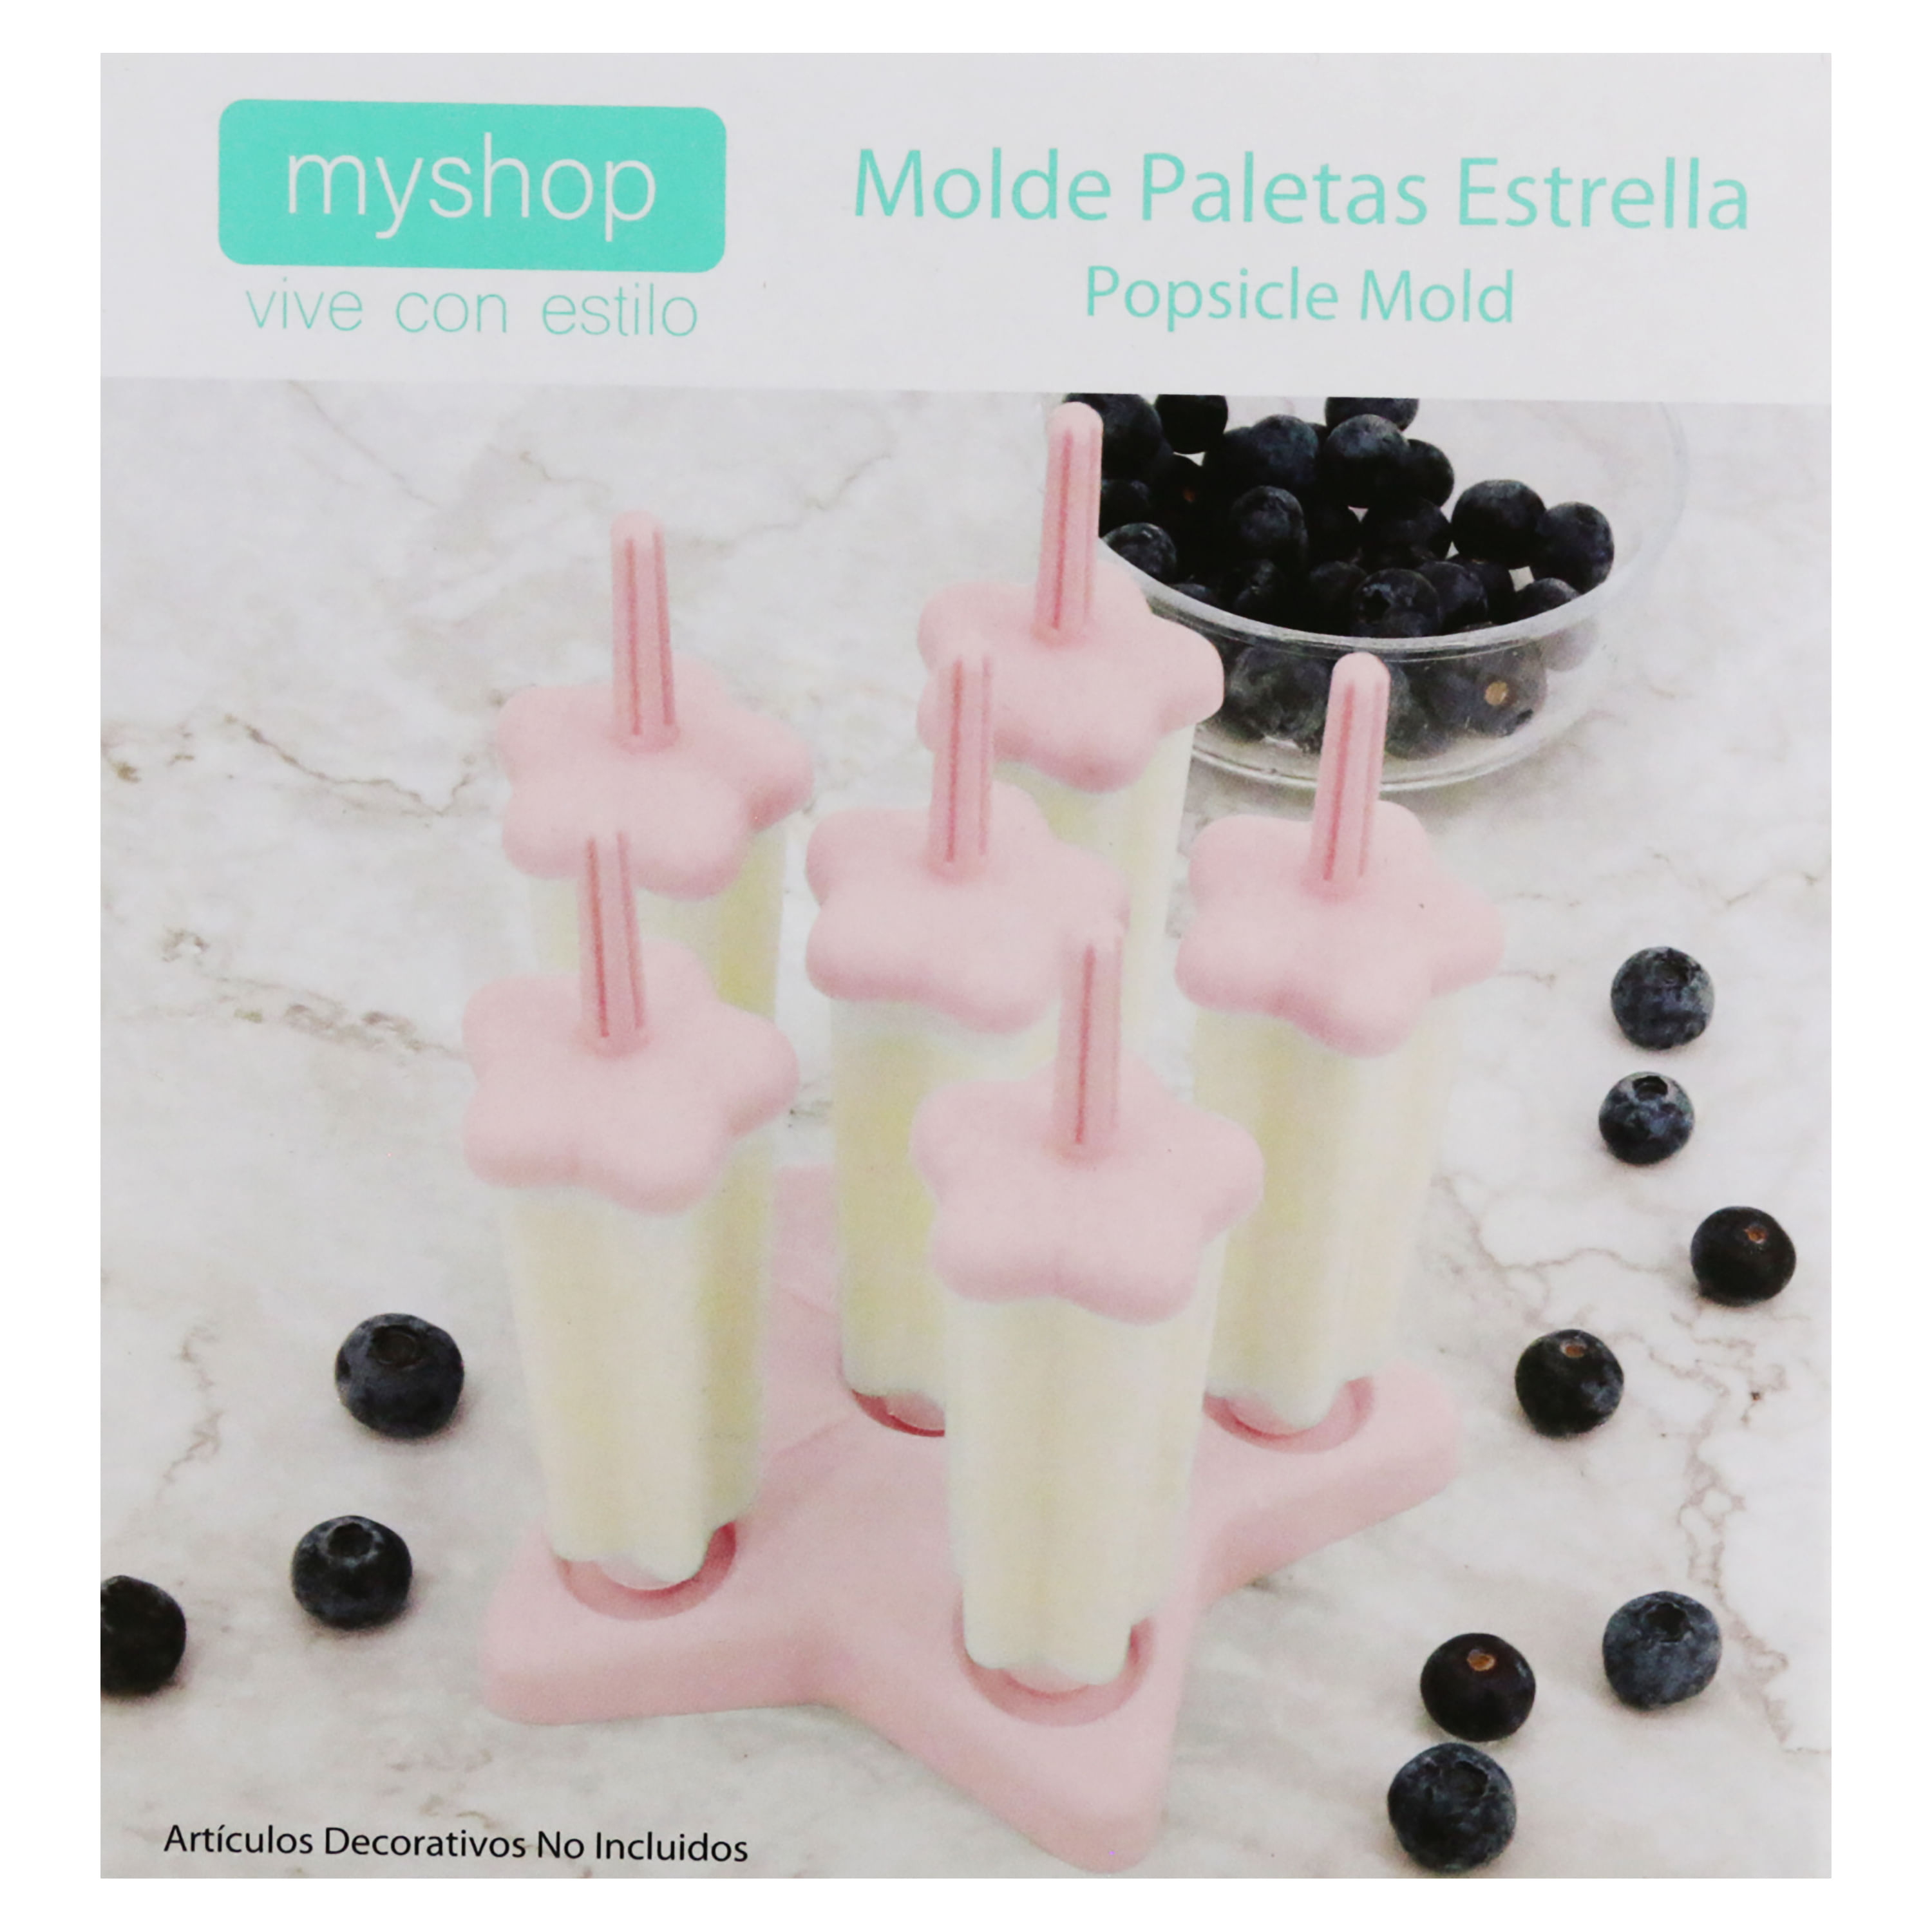 Moldes Para Paletas - Mr. Mold Shop Shop Accesorios E Insumos Repostería